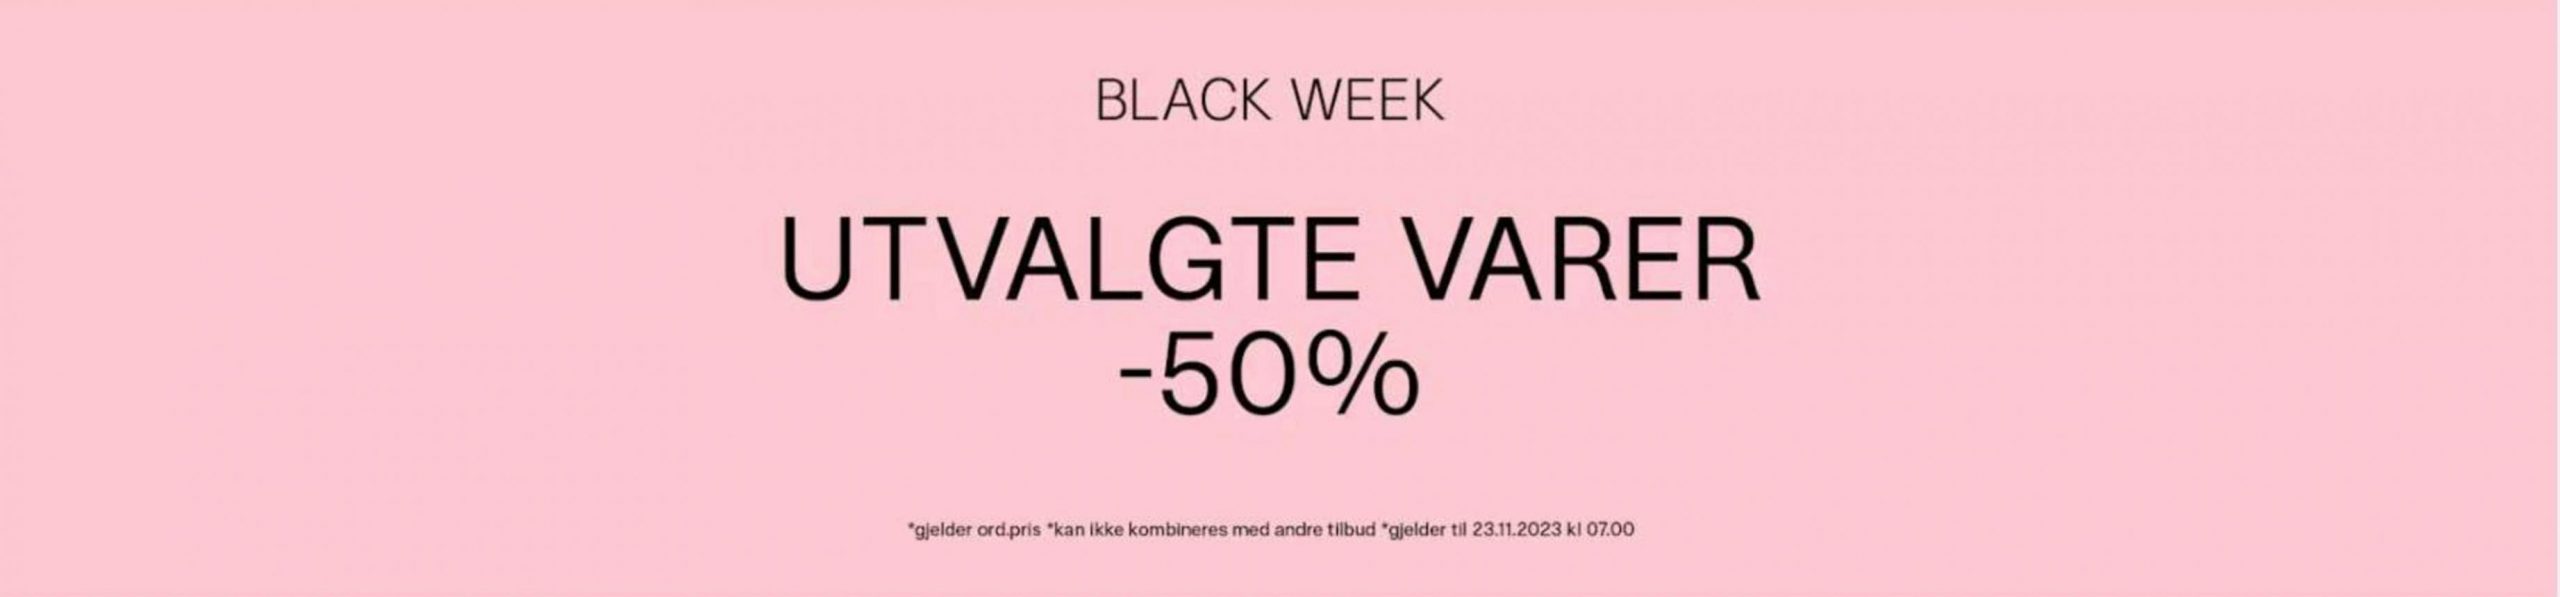 Black Week -50%. Bik Bok (2023-11-23-2023-11-23)